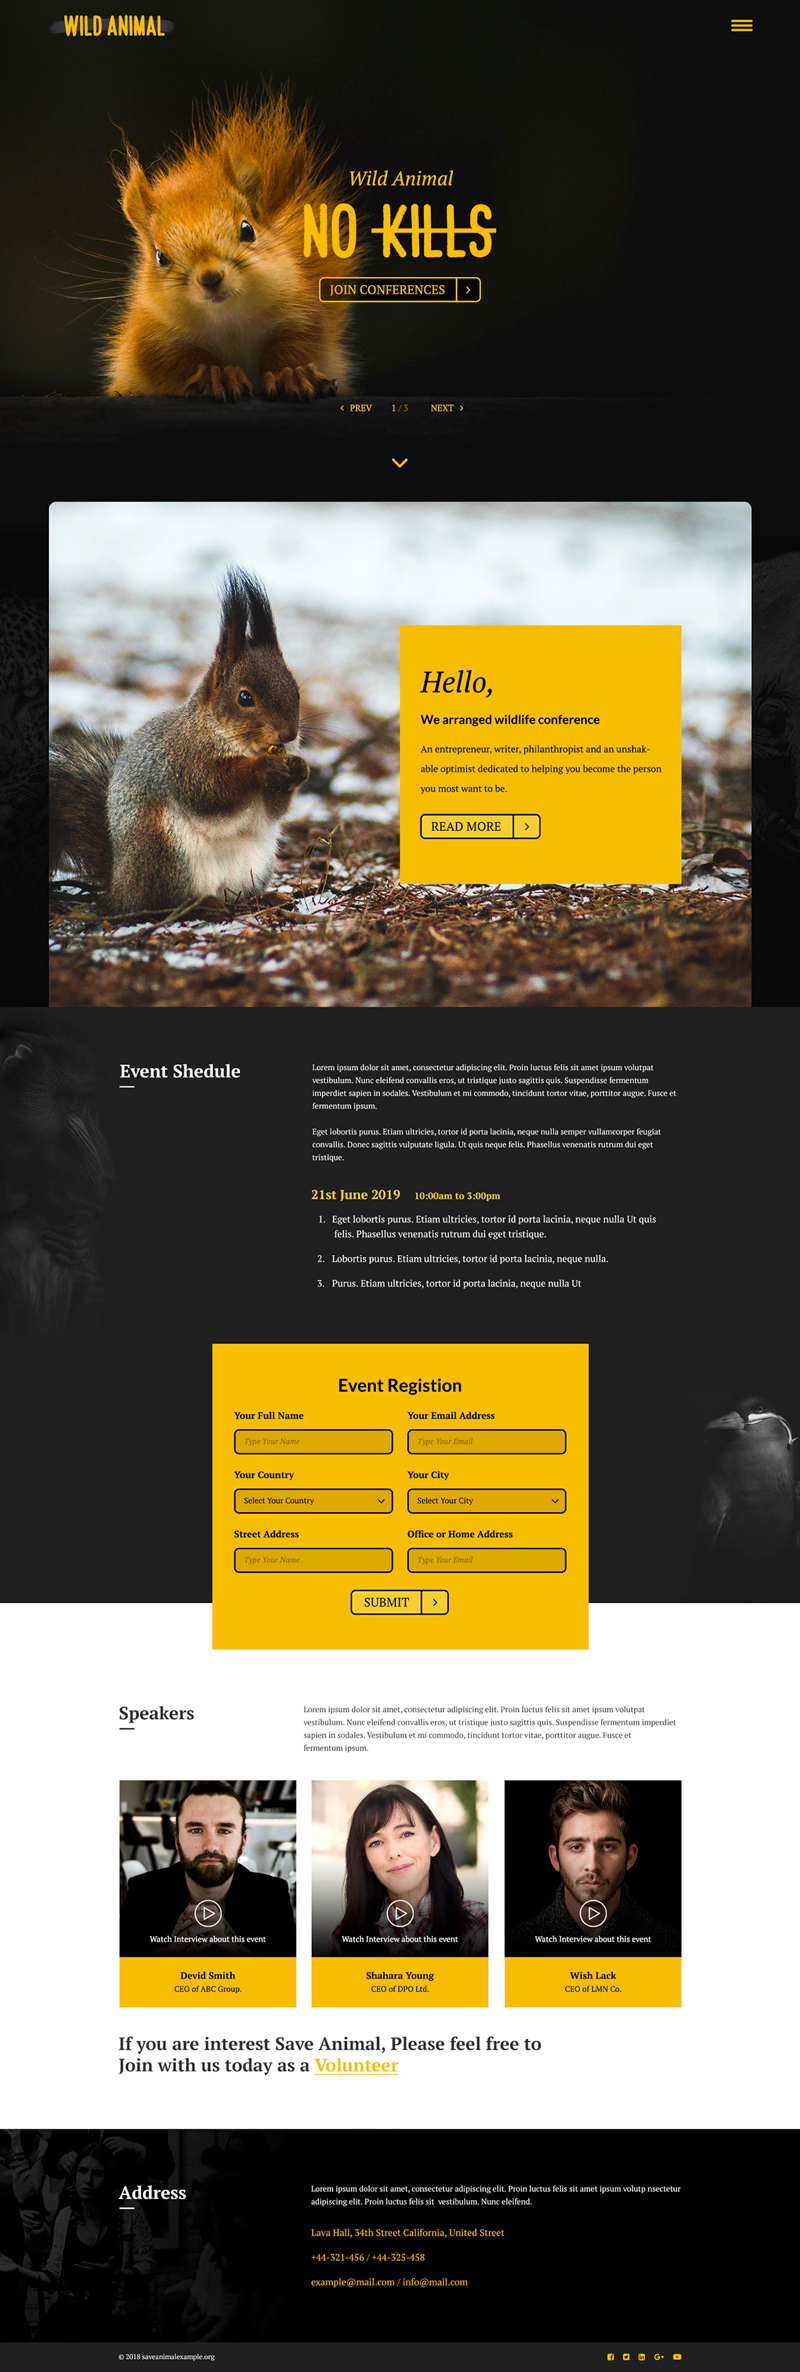 Дикое животное - целевая страница конференции для Adobe XD